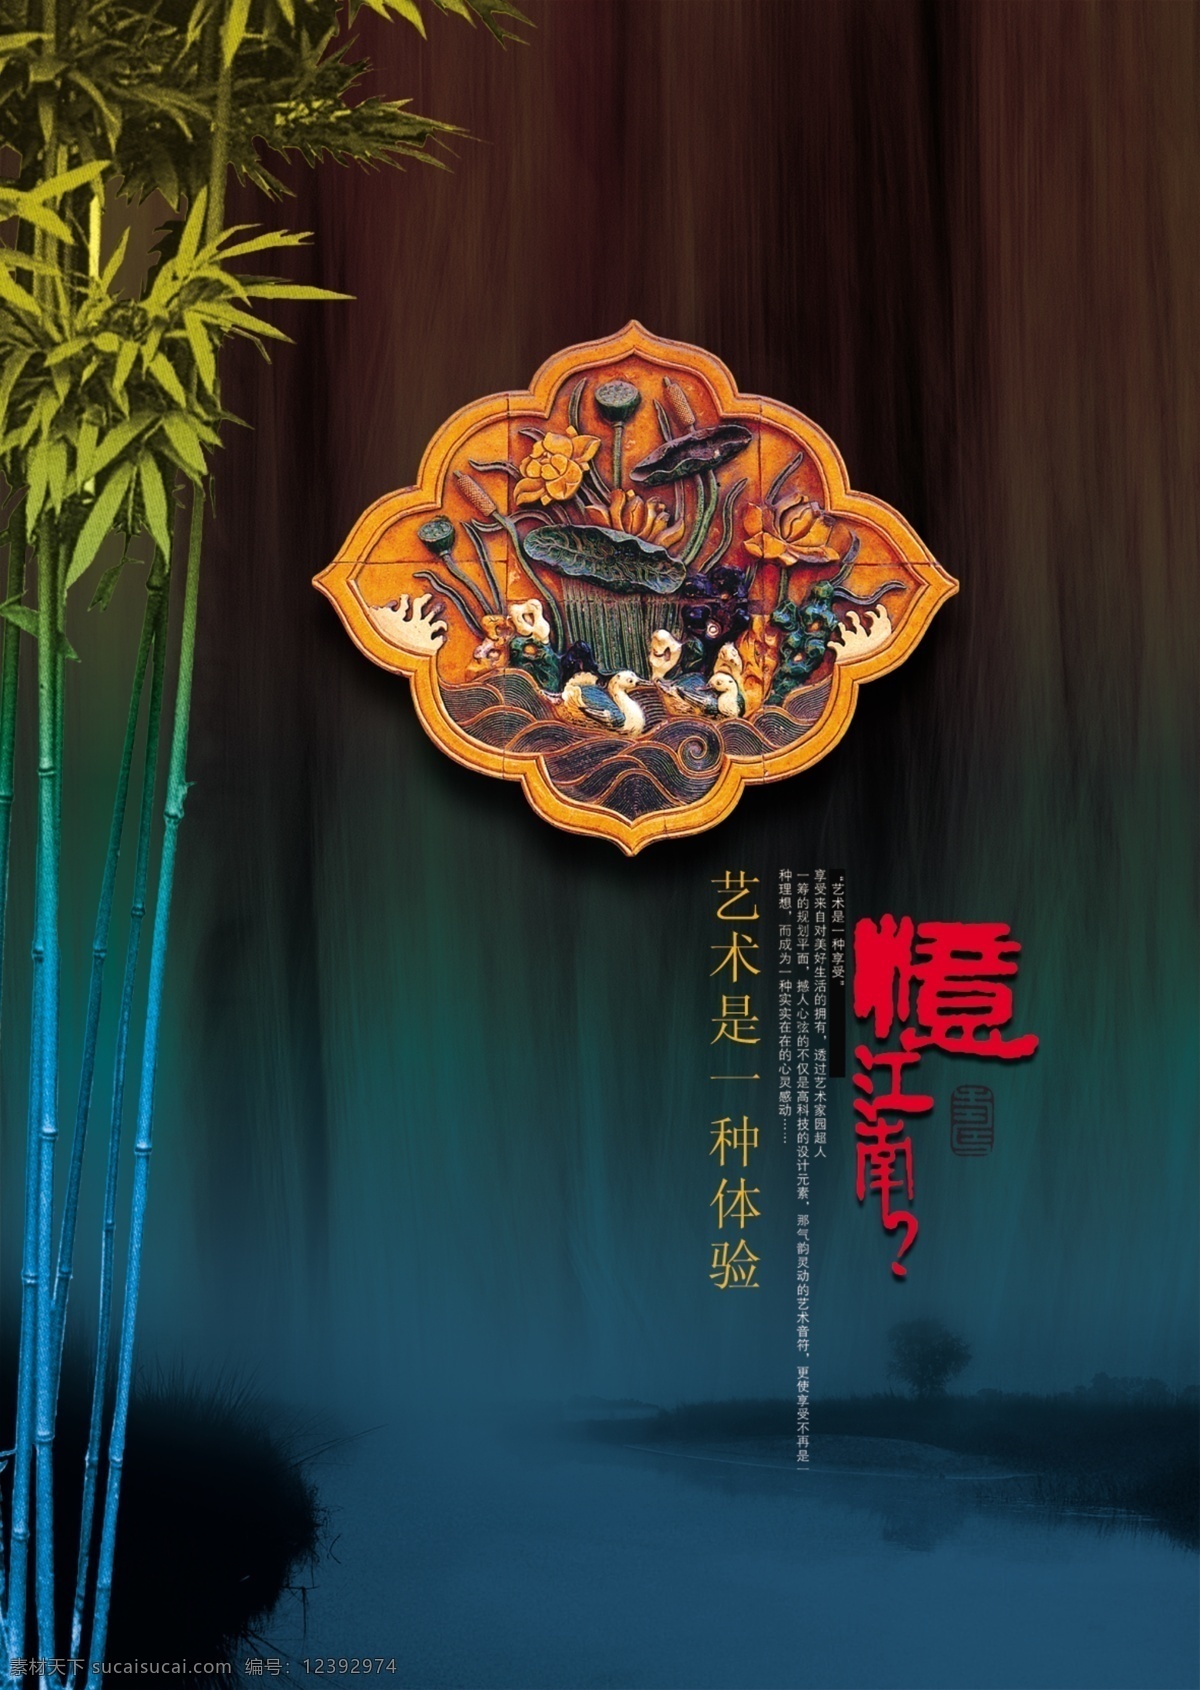 中国 风 毛竹 意境 艺术 海报 中国风 山水画 国画 山水 黑色